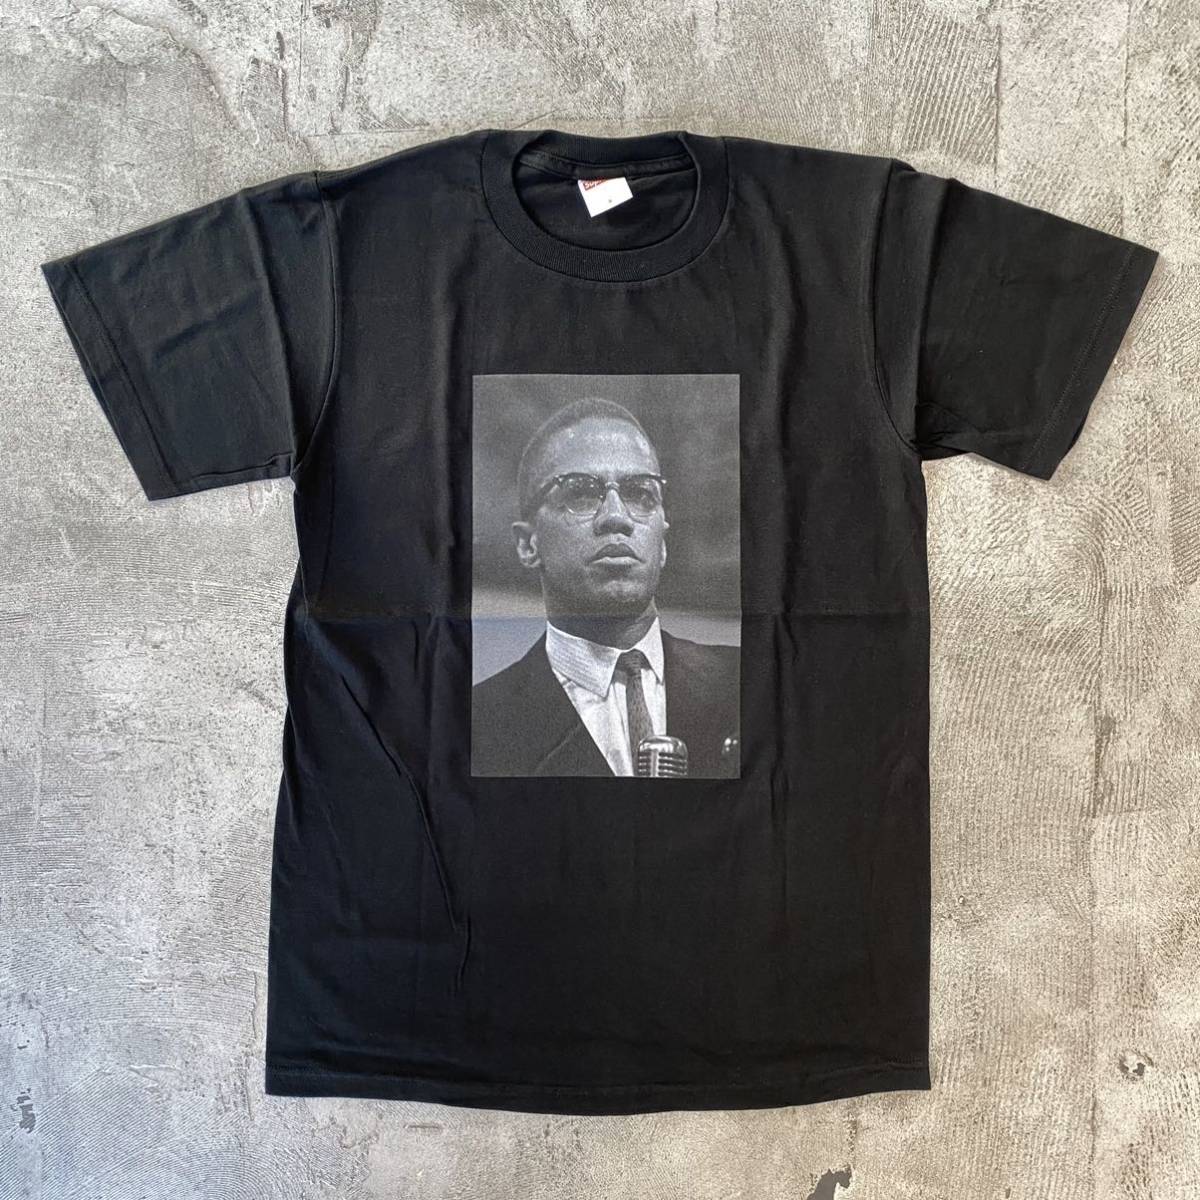 22ss 新品 Supreme Malcolm X Tee シュプリーム マルコム エックス Tシャツ フォト ROY DeCARAVA SMALL BOX Black ブラック 黒 size S (71